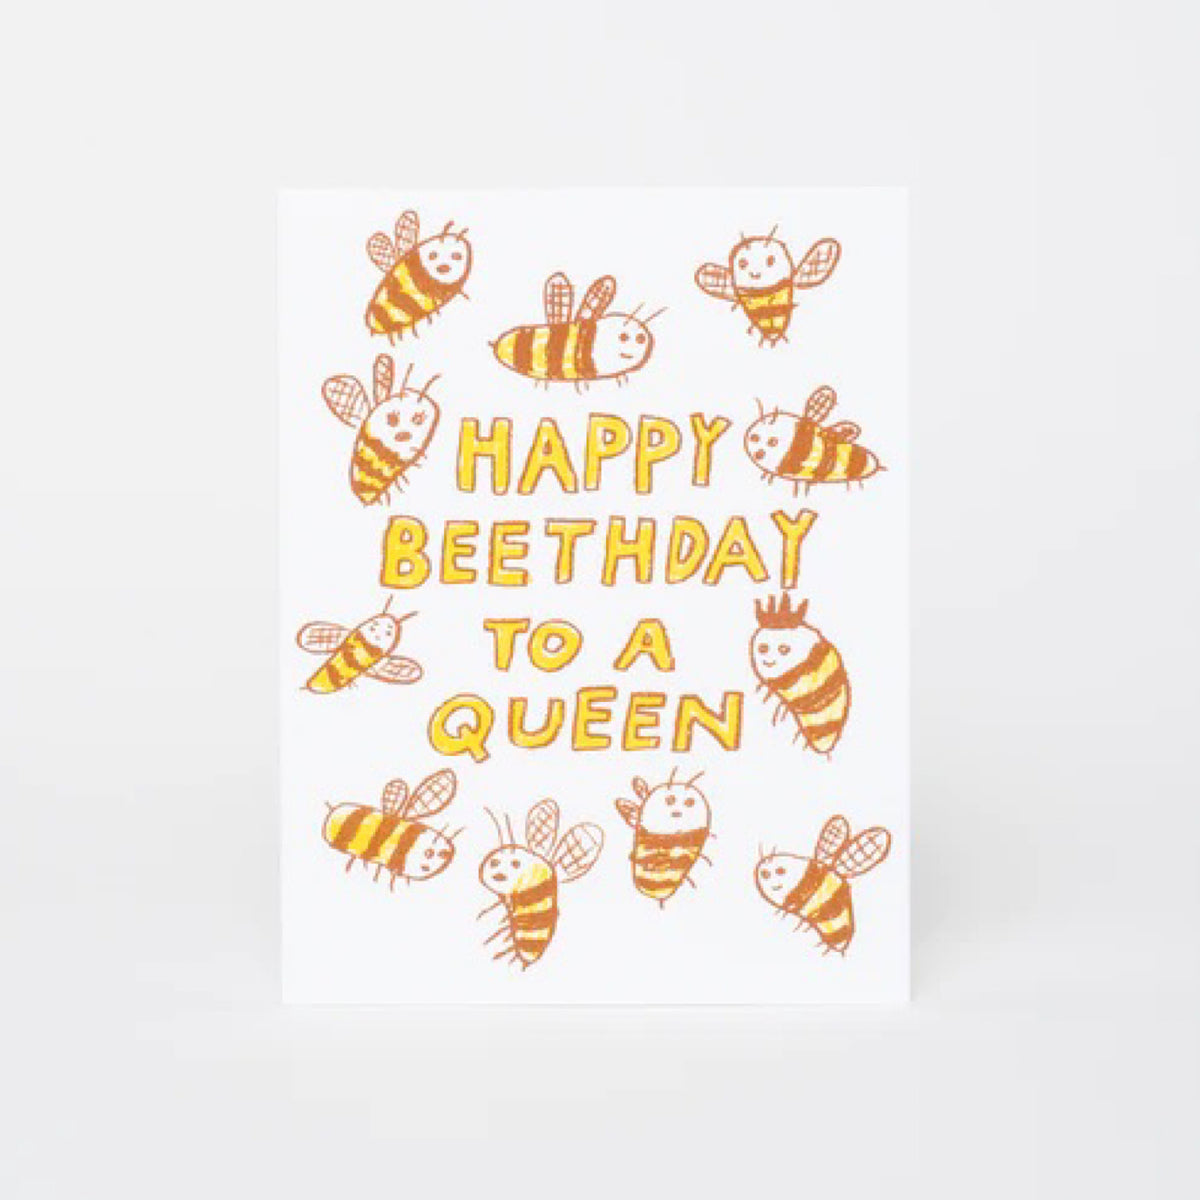 Beethday Queen Card